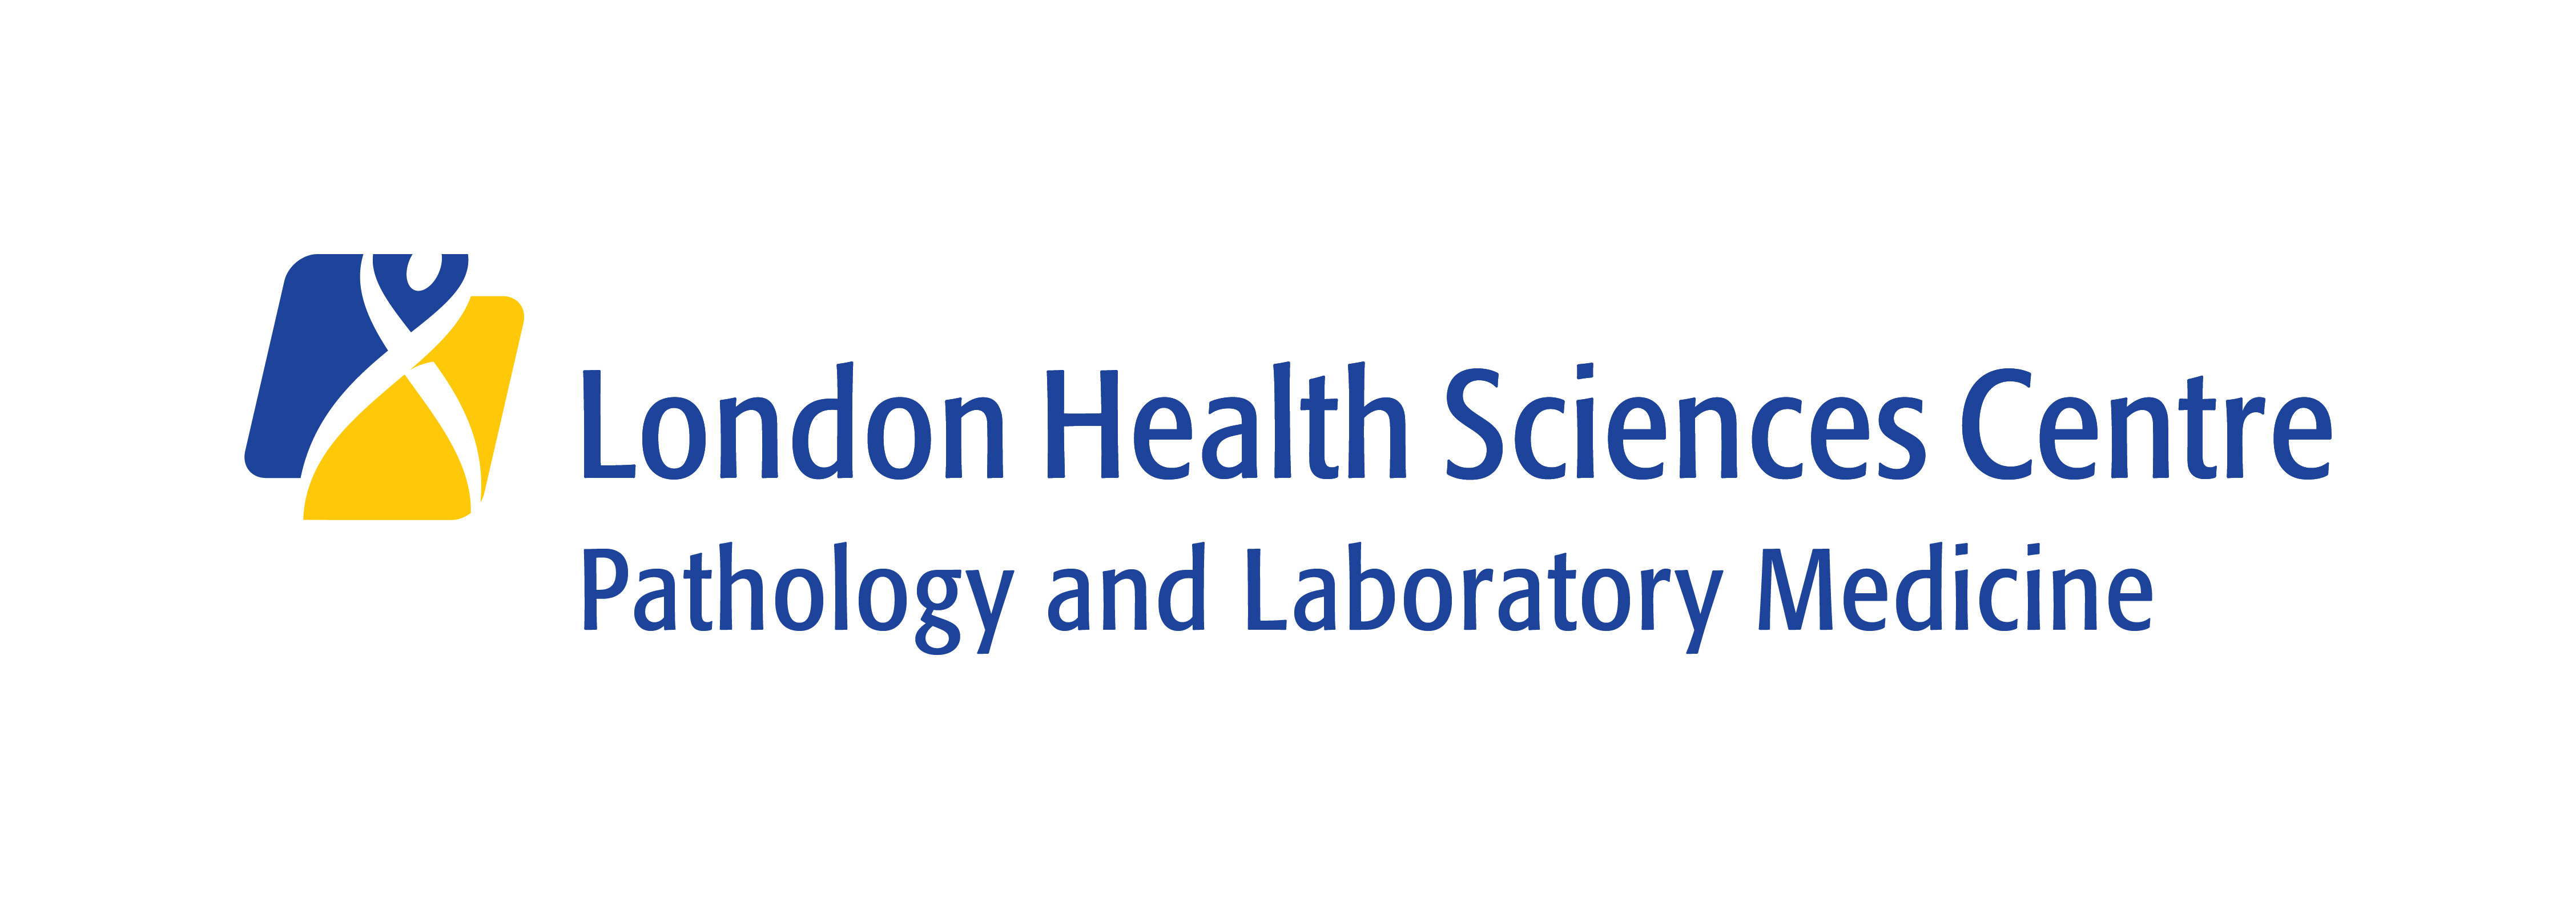 Pathology and Laboratory Medicine logo